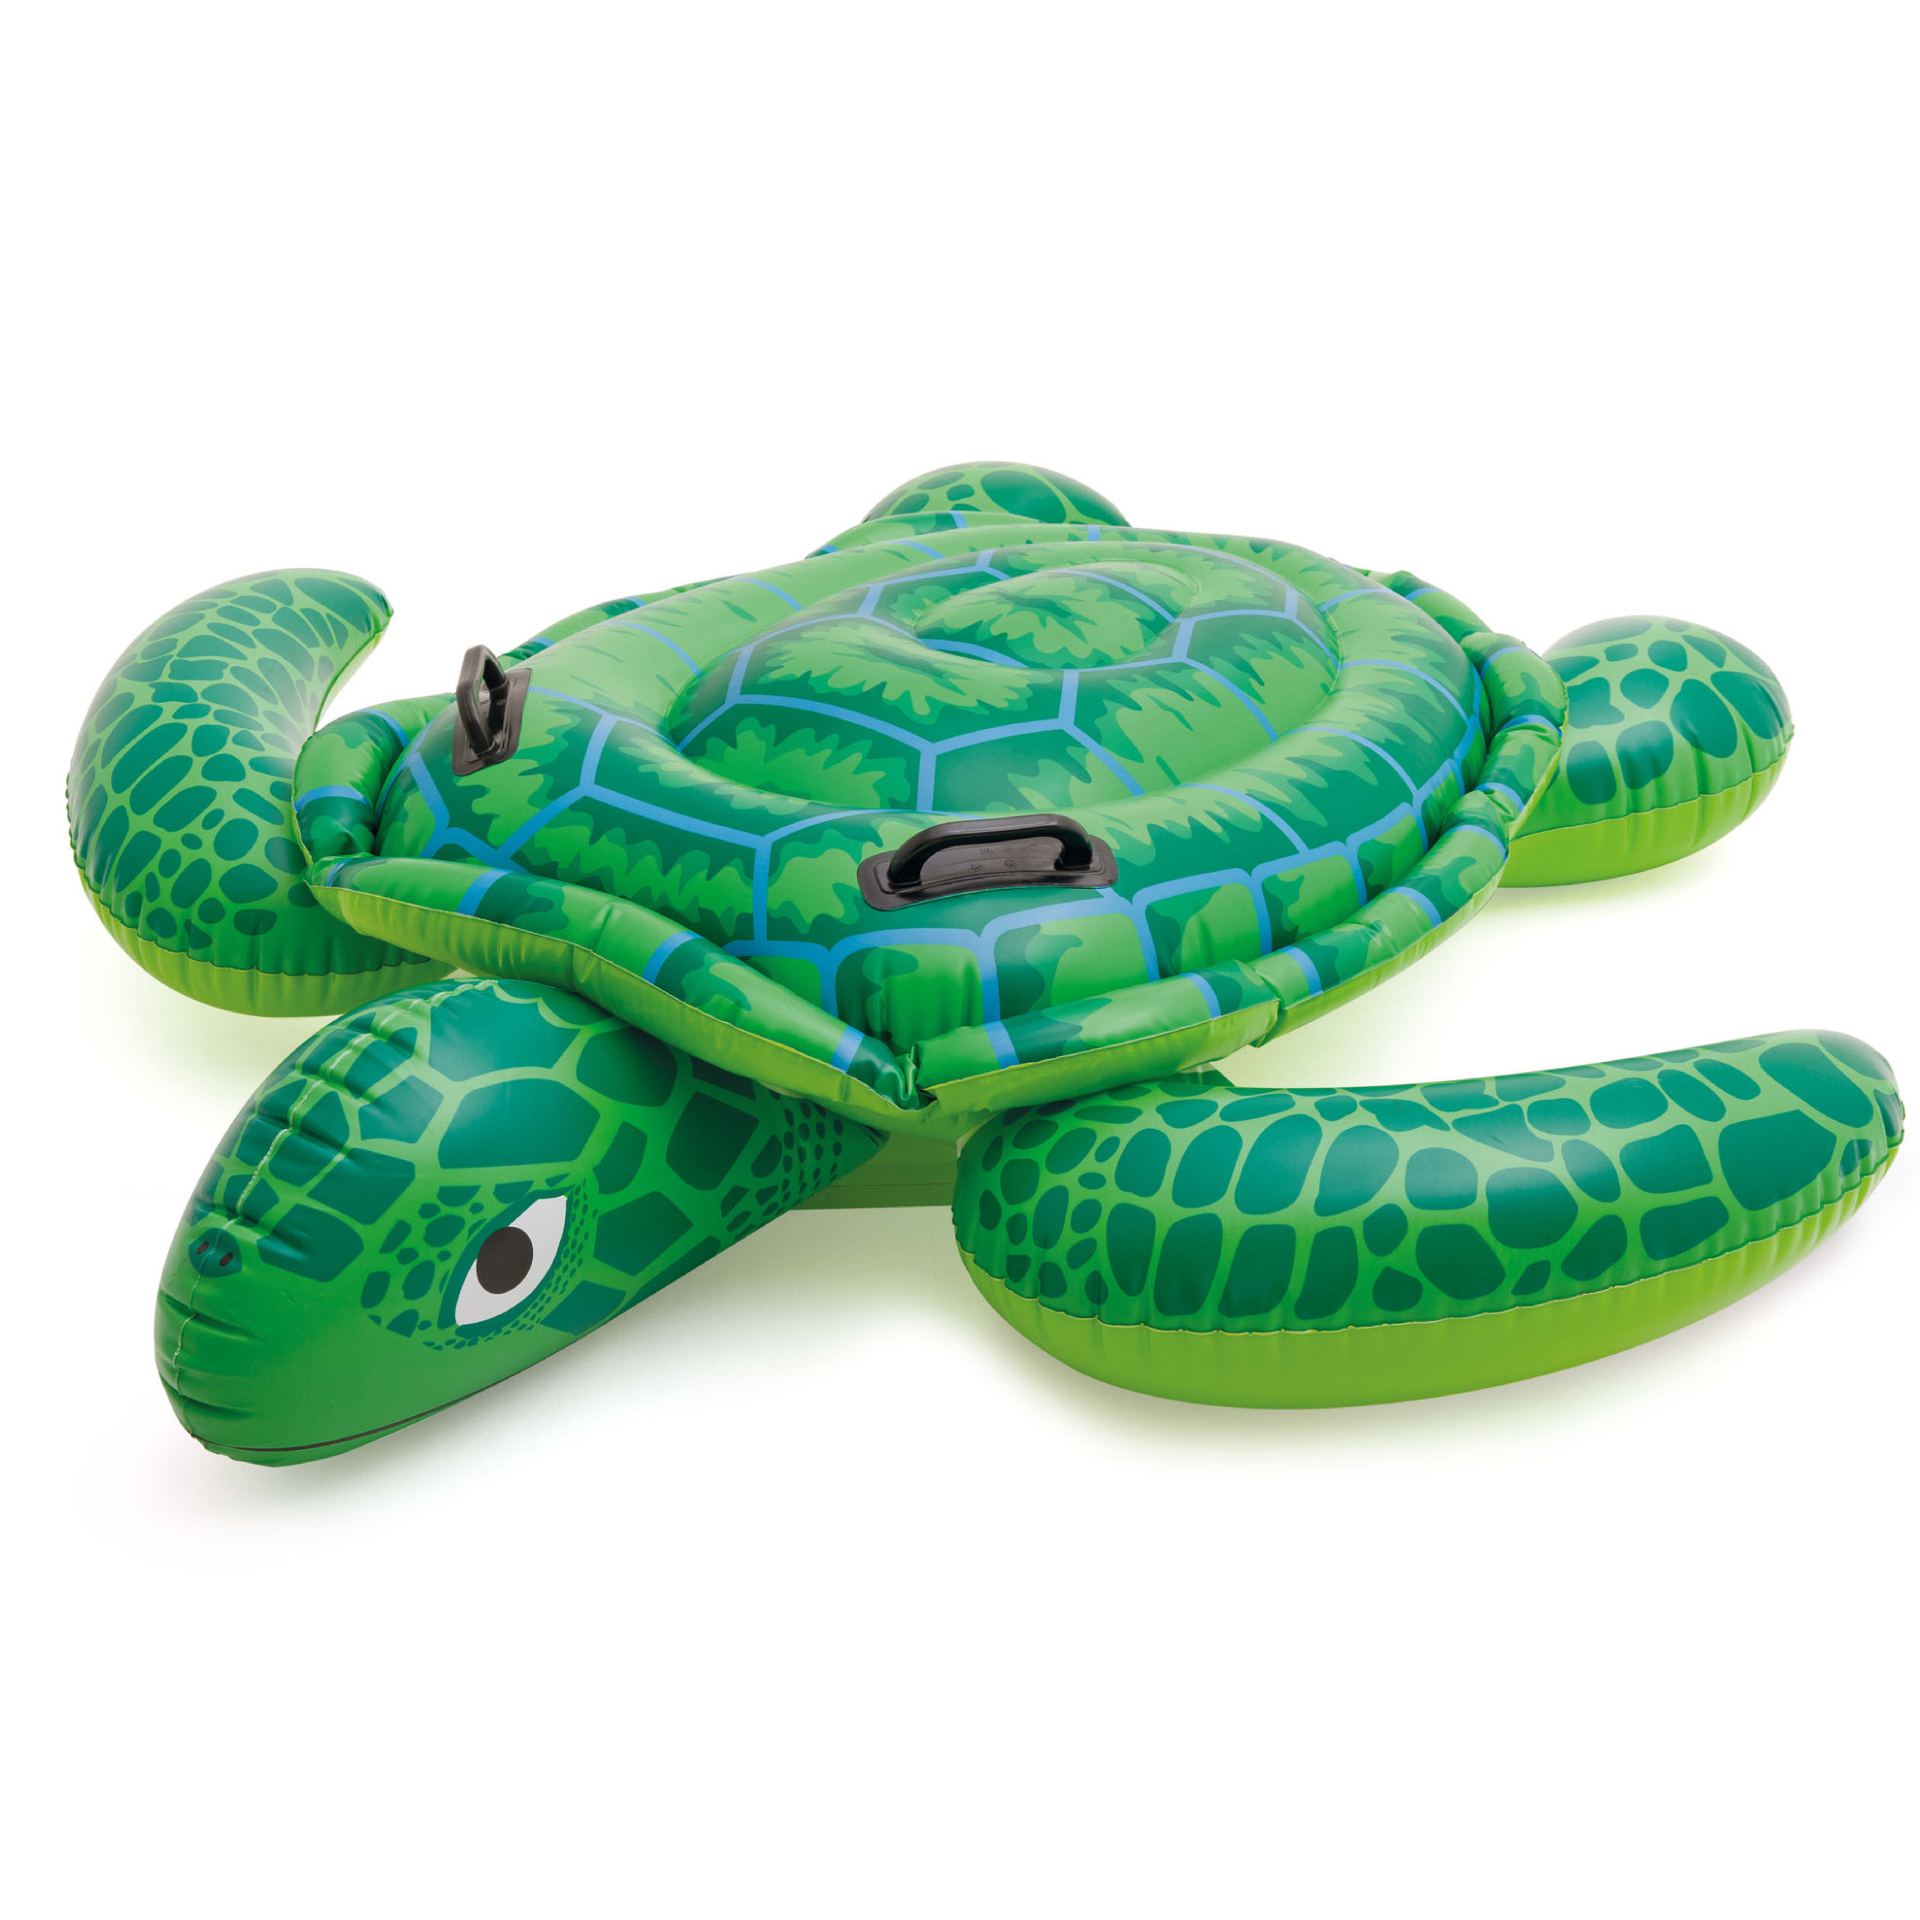 Intex lil' sea turtle ride-on